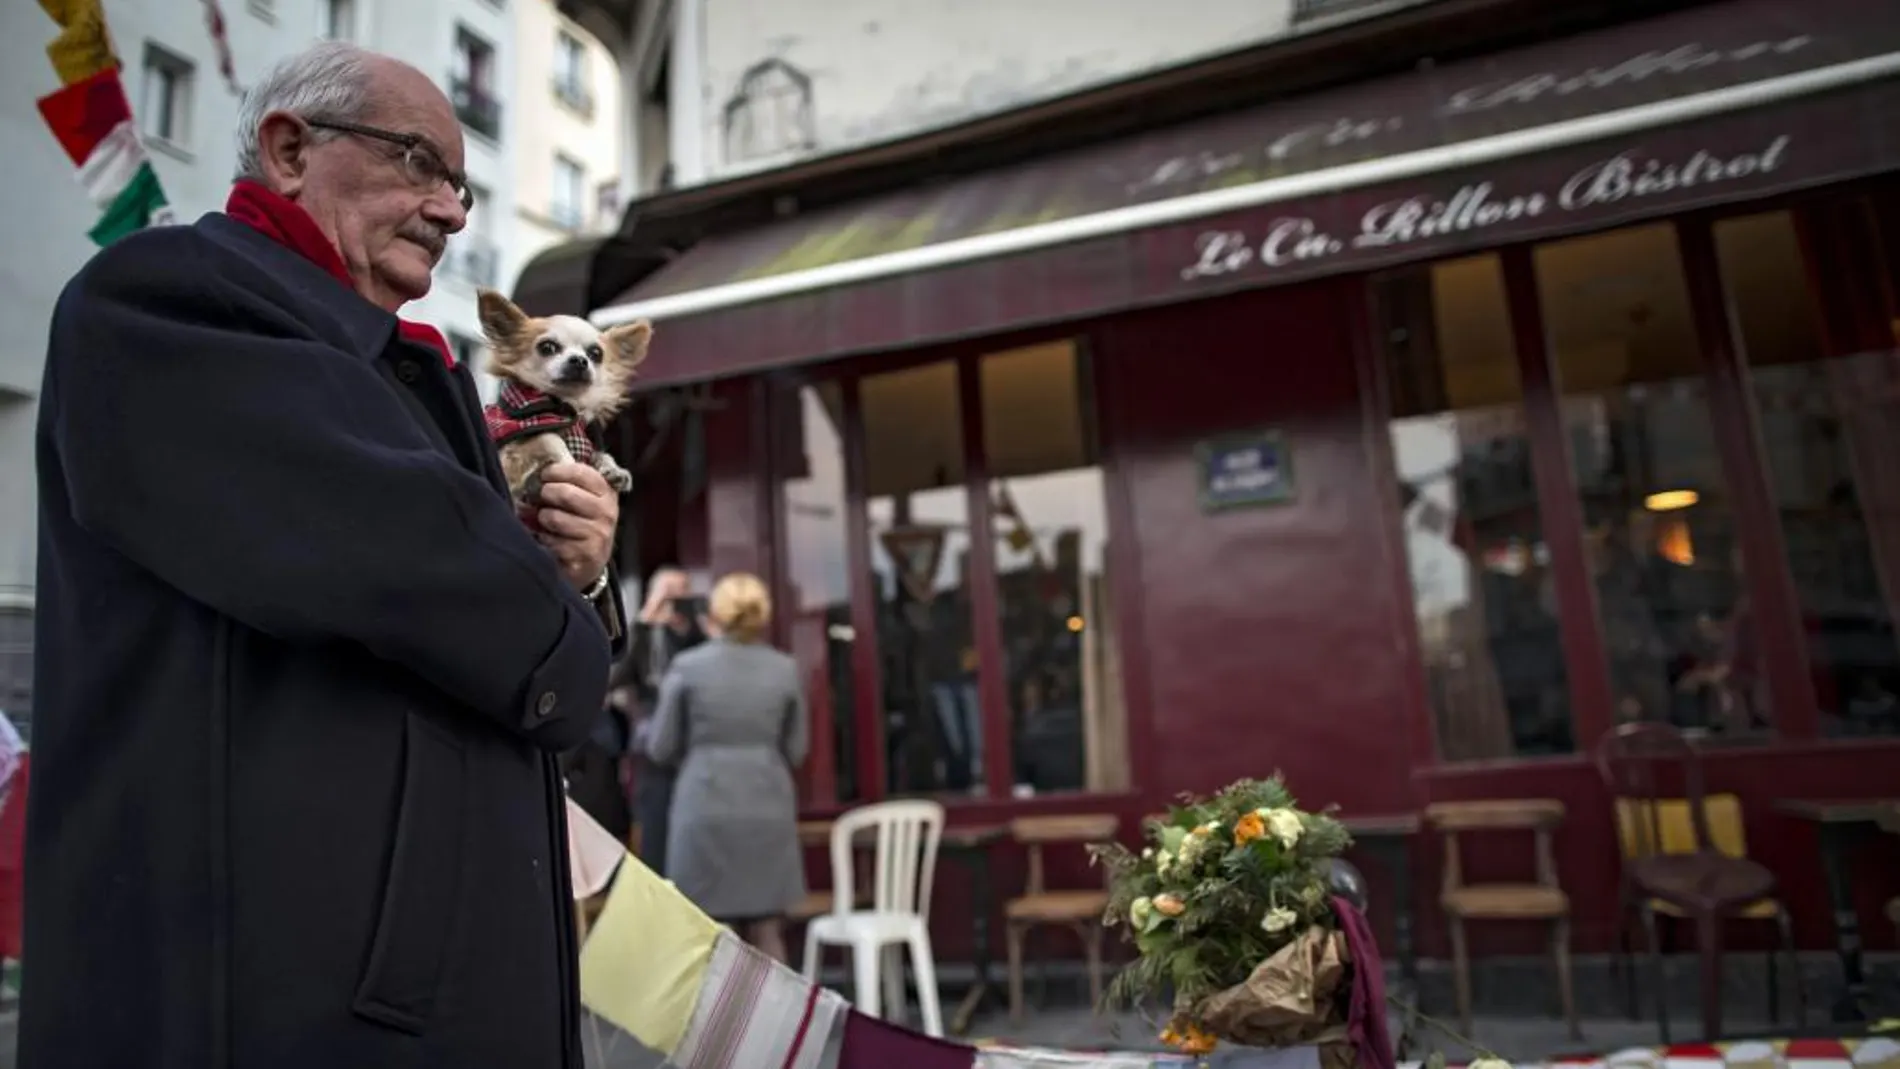 Un hombre asiste a la reapertura del primero de los bares atacados el 13-N, Le Carillon, en París el pasado 13 de enero